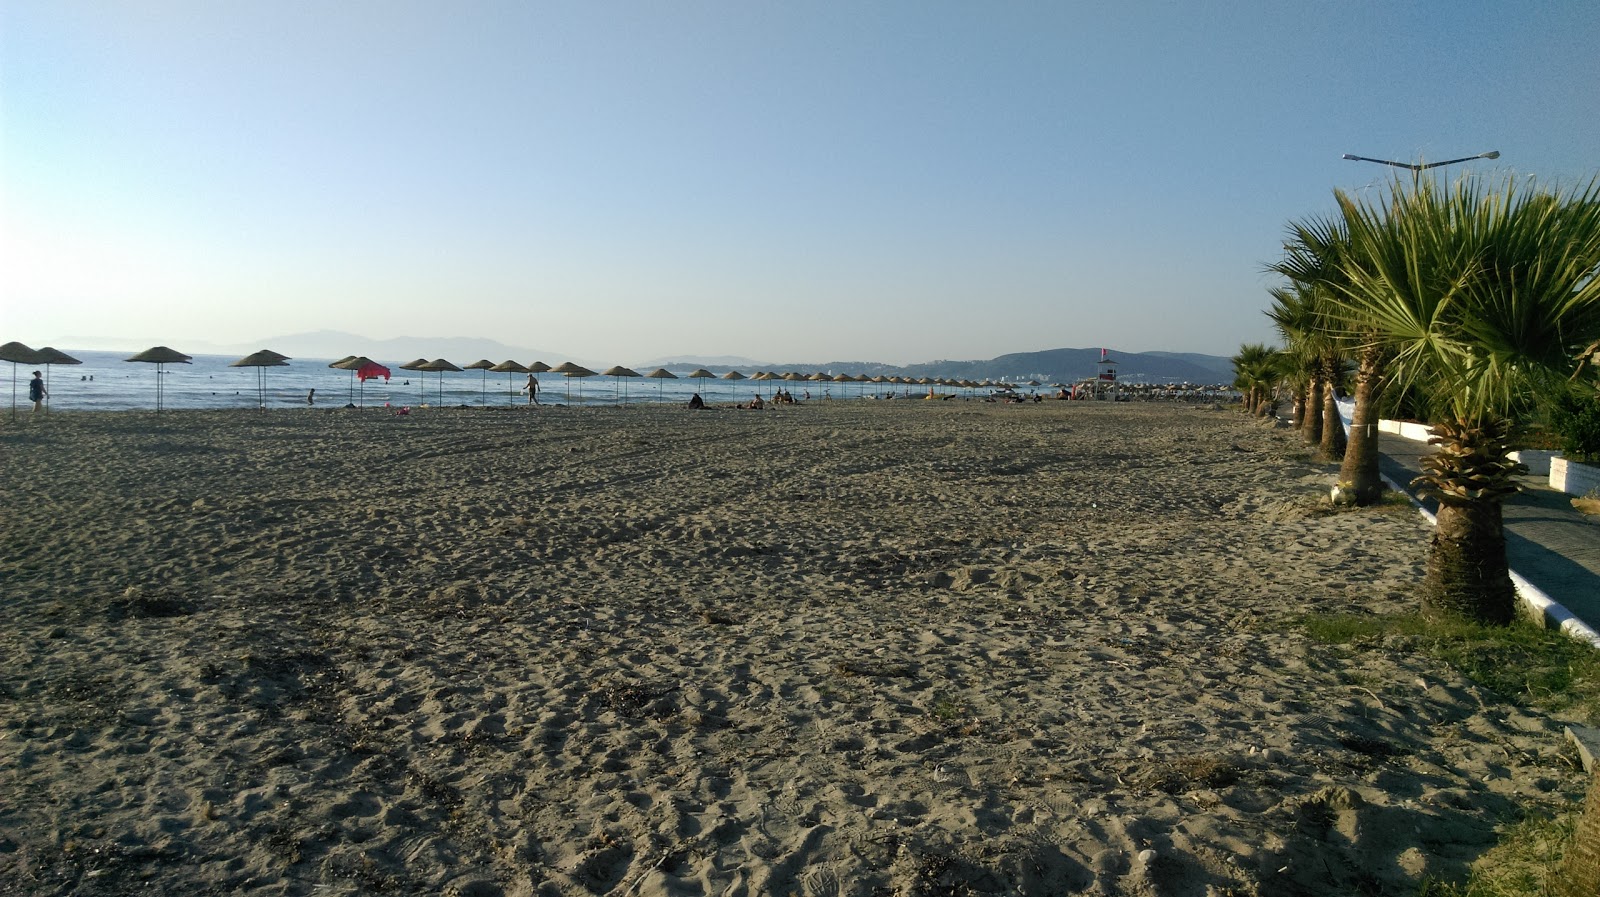 Zdjęcie Kinaliada Beach - popularne miejsce wśród znawców relaksu